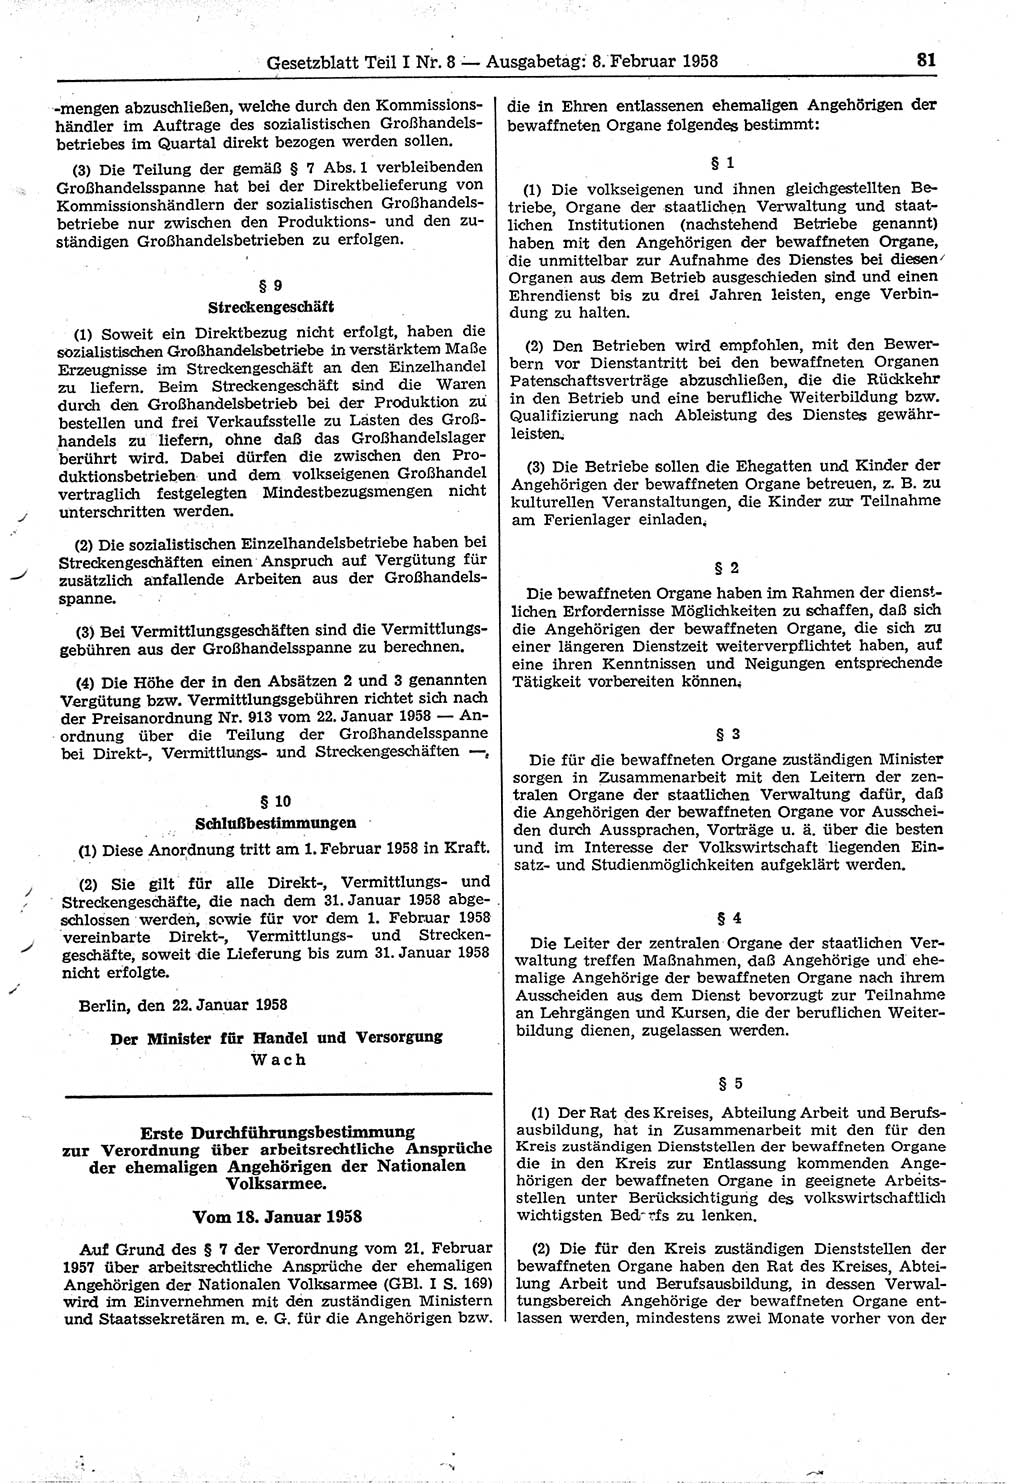 Gesetzblatt (GBl.) der Deutschen Demokratischen Republik (DDR) Teil Ⅰ 1958, Seite 81 (GBl. DDR Ⅰ 1958, S. 81)